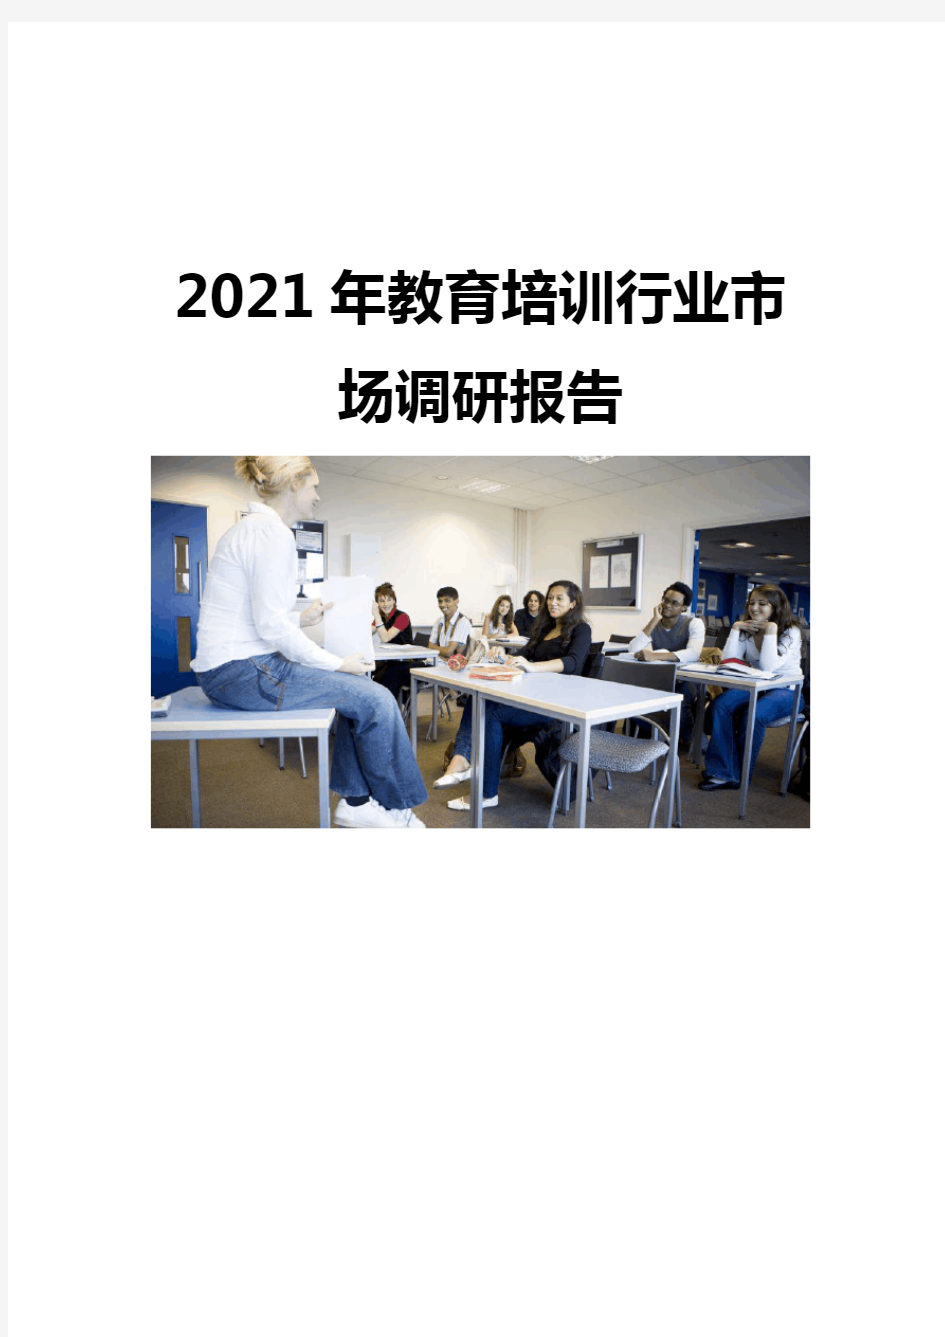 2021教育培训行业市场调研报告